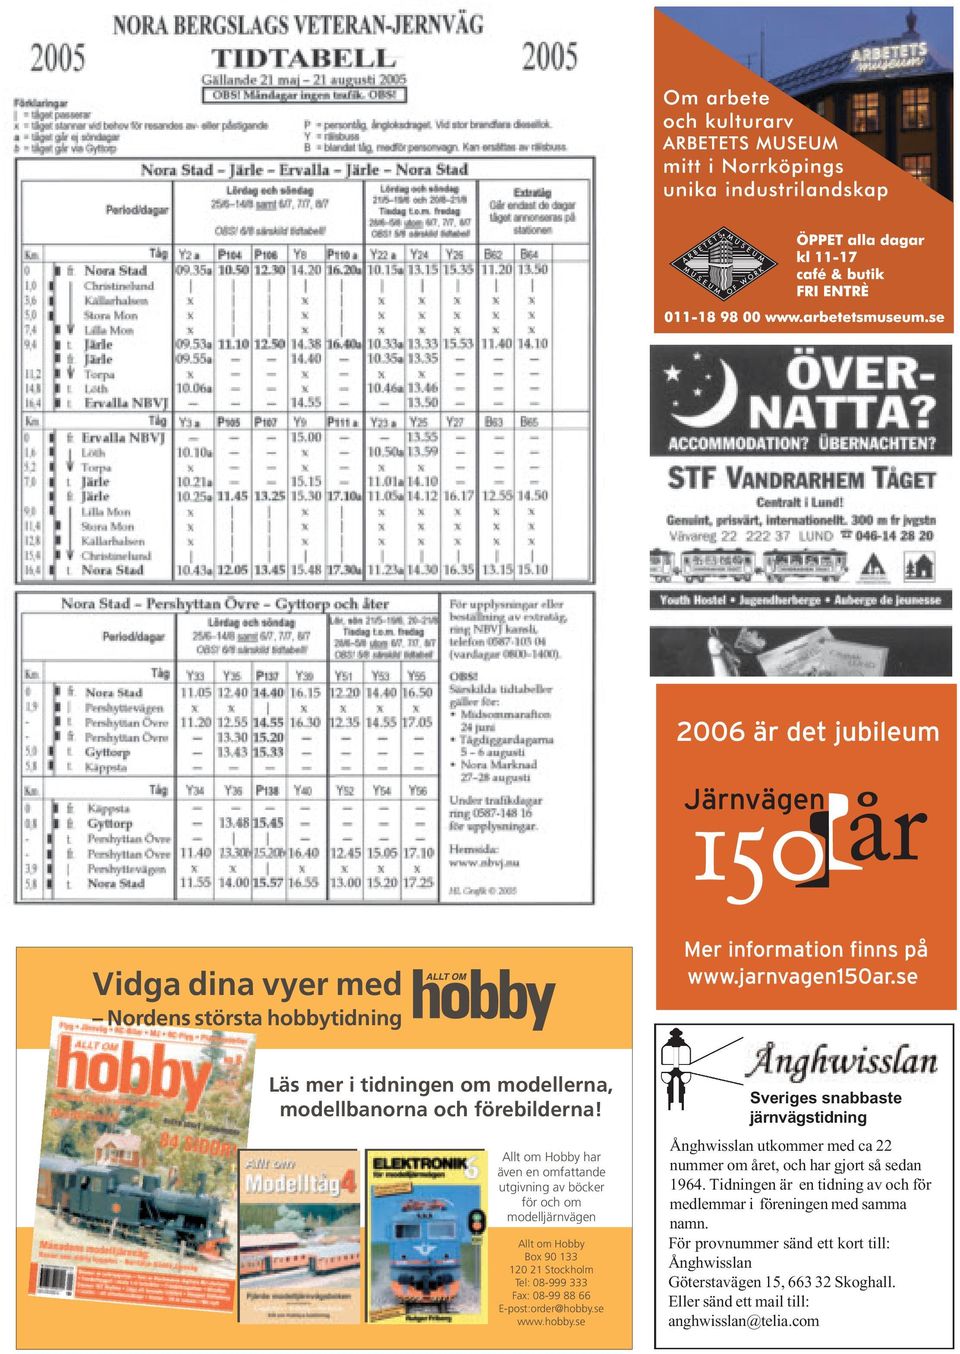 66 E-post:order@hobby.se www.hobby.se Sveriges snabbaste järnvägstidning Ånghwisslan utkommer med ca 22 nummer om året, och har gjort så sedan 1964.